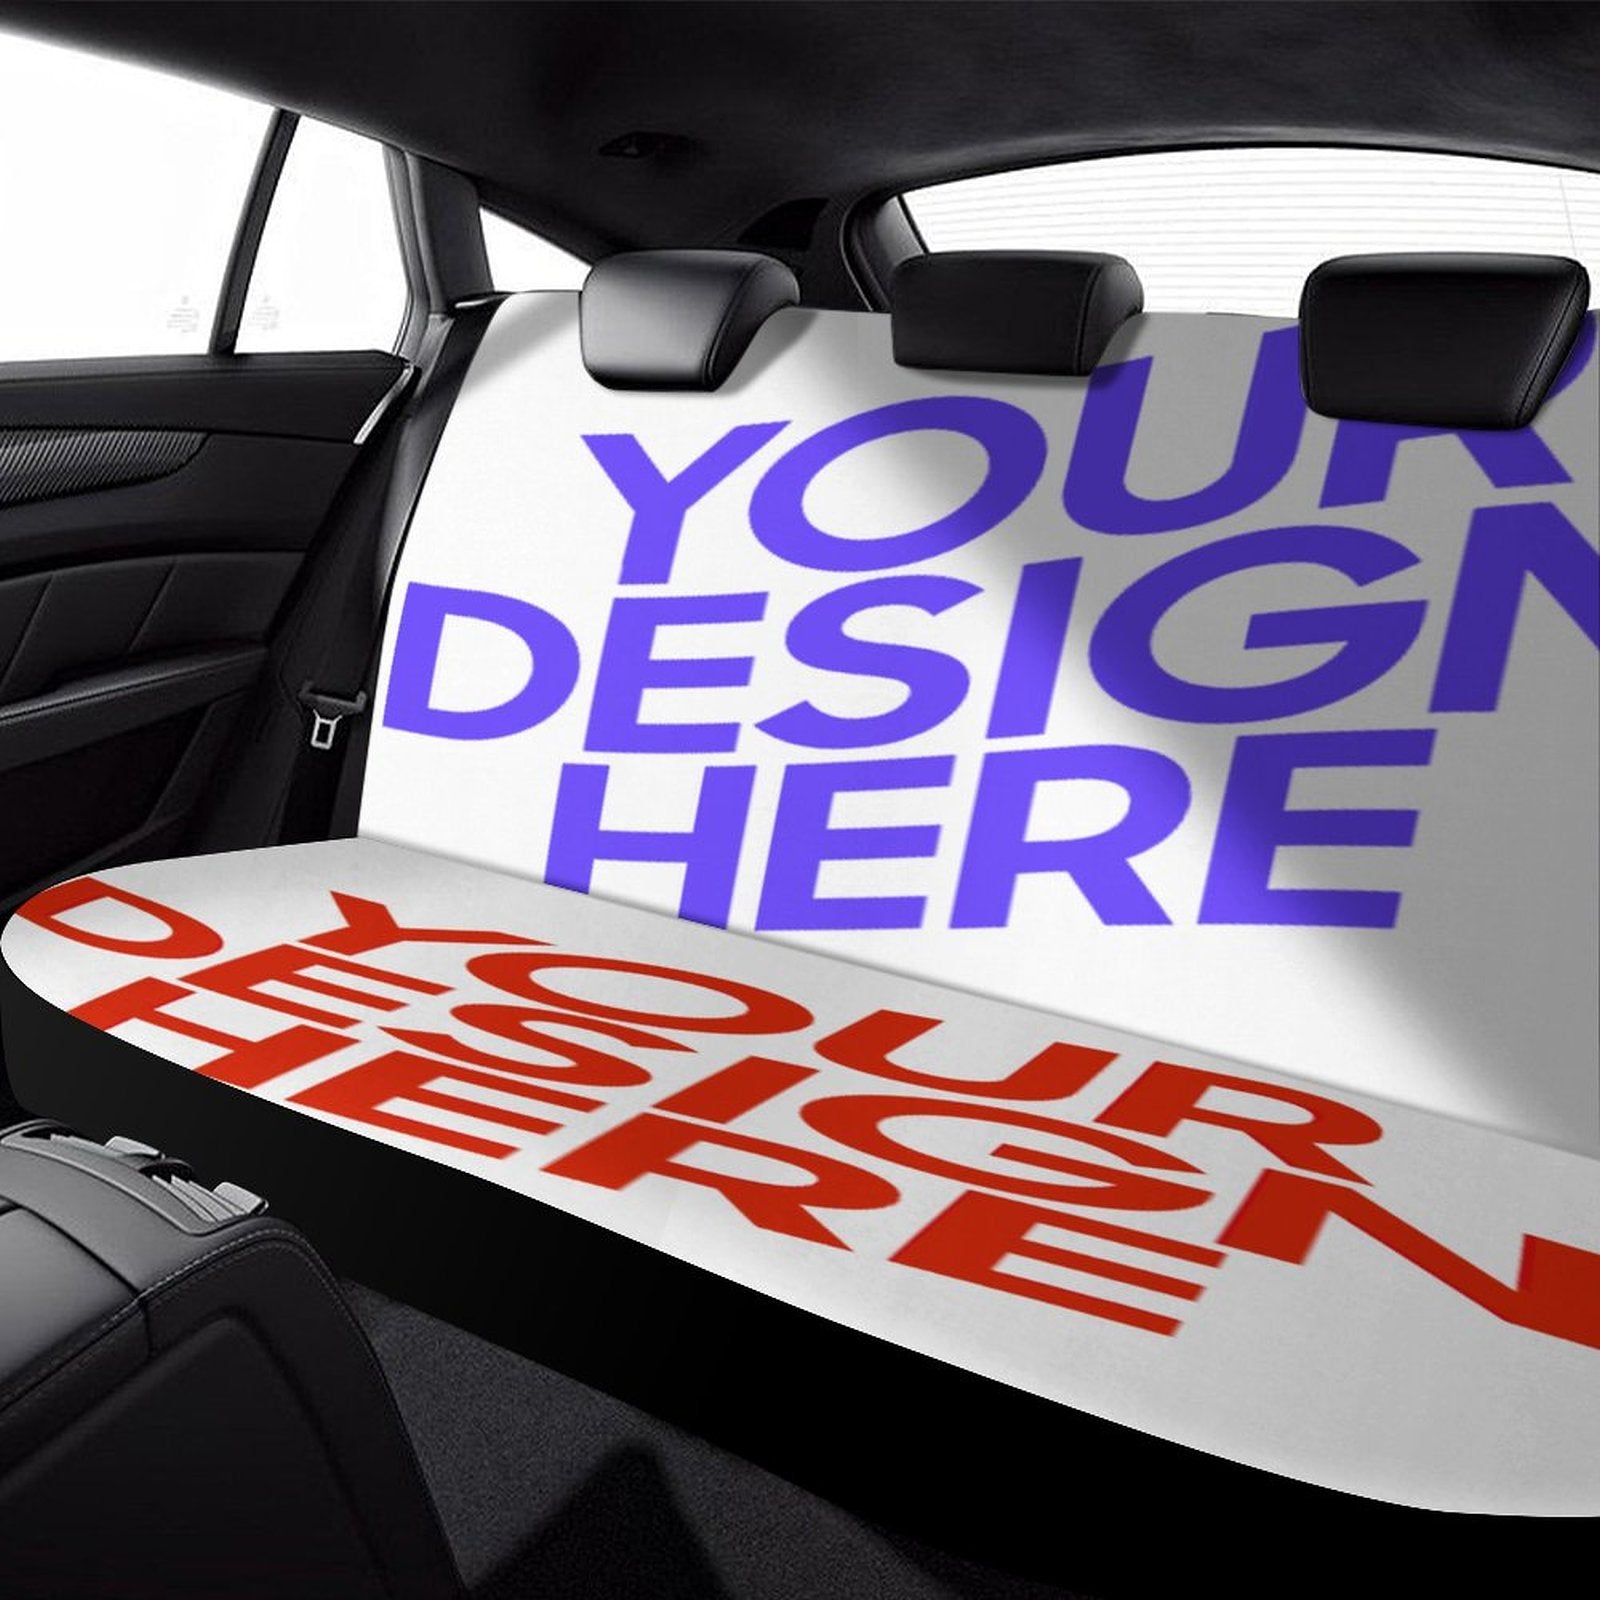 Auto Rücksitzbezug Autositzbezug mit Foto Design Motiv Text selbst